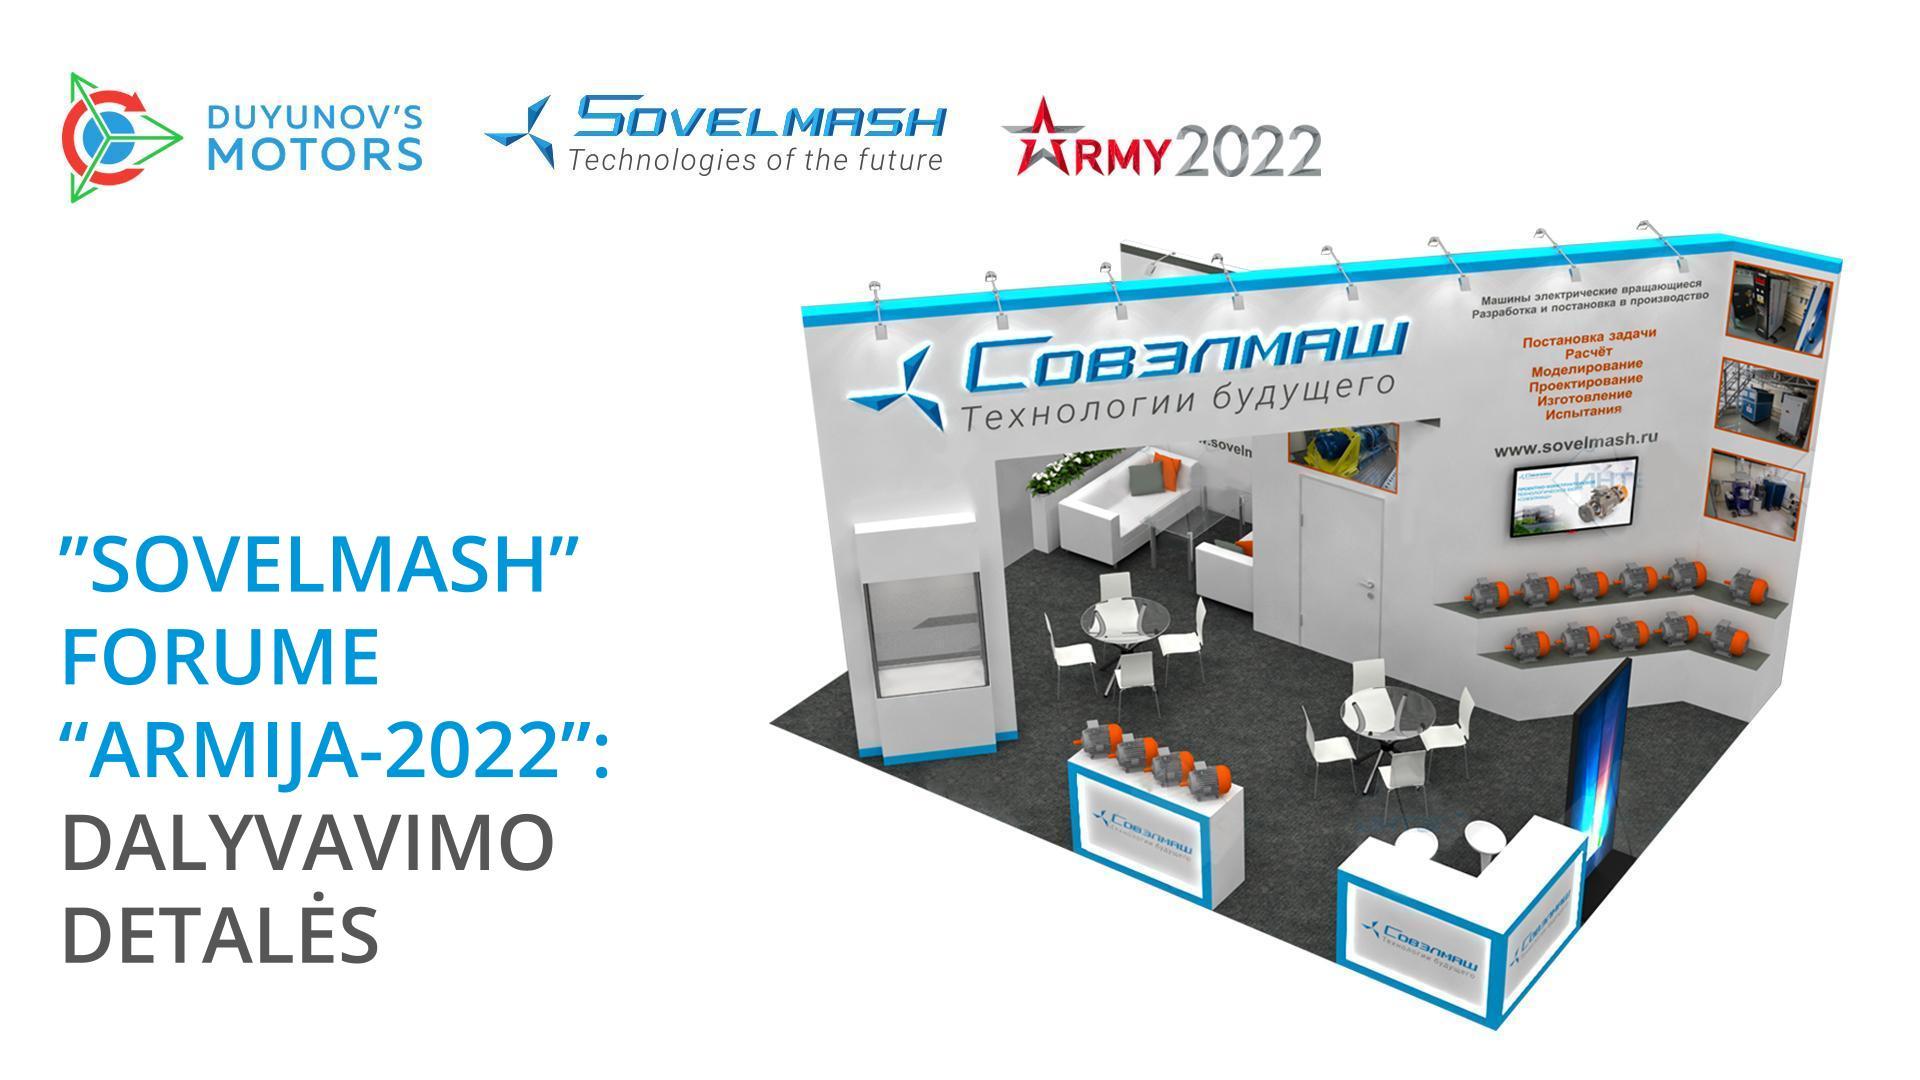 Sovelmash al forum Army-2022: dettagli della partecipazione